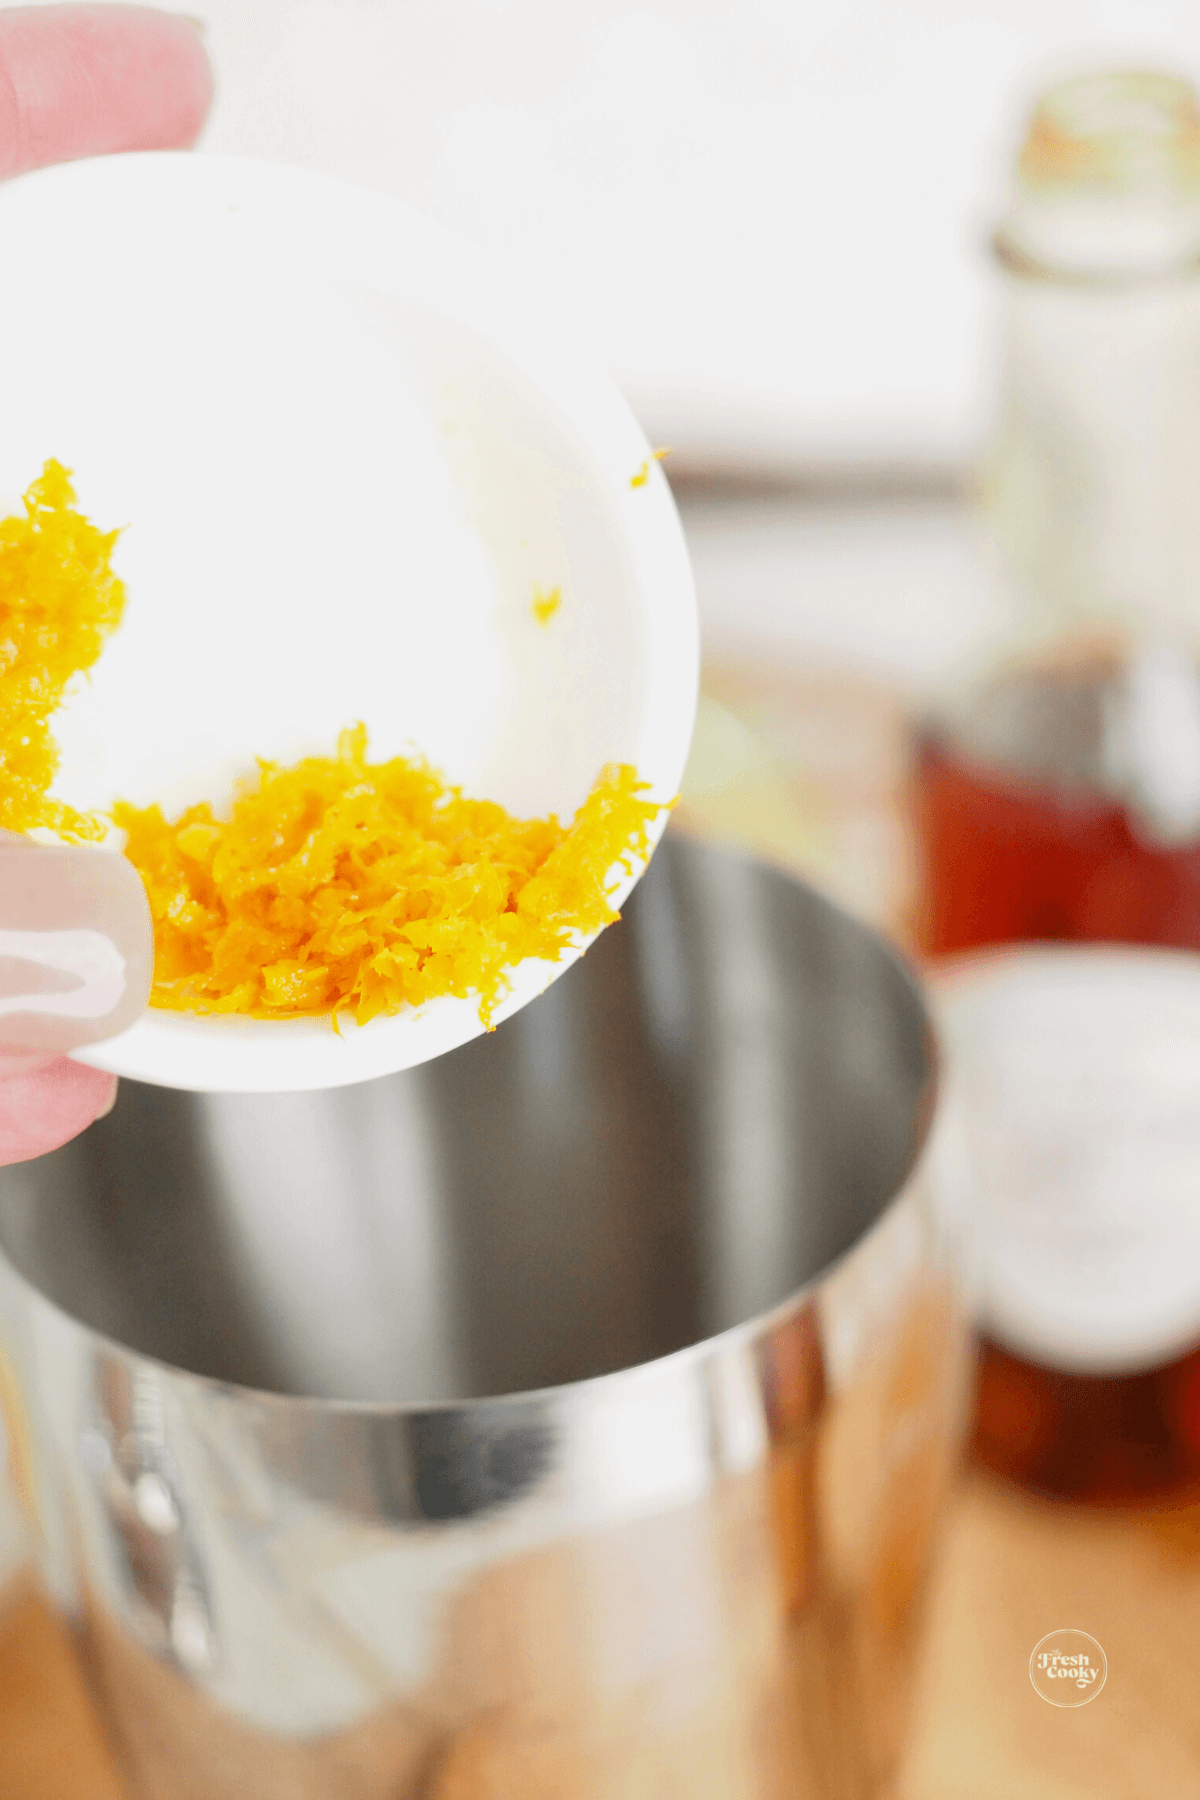 Adding orange zest to shaker. 